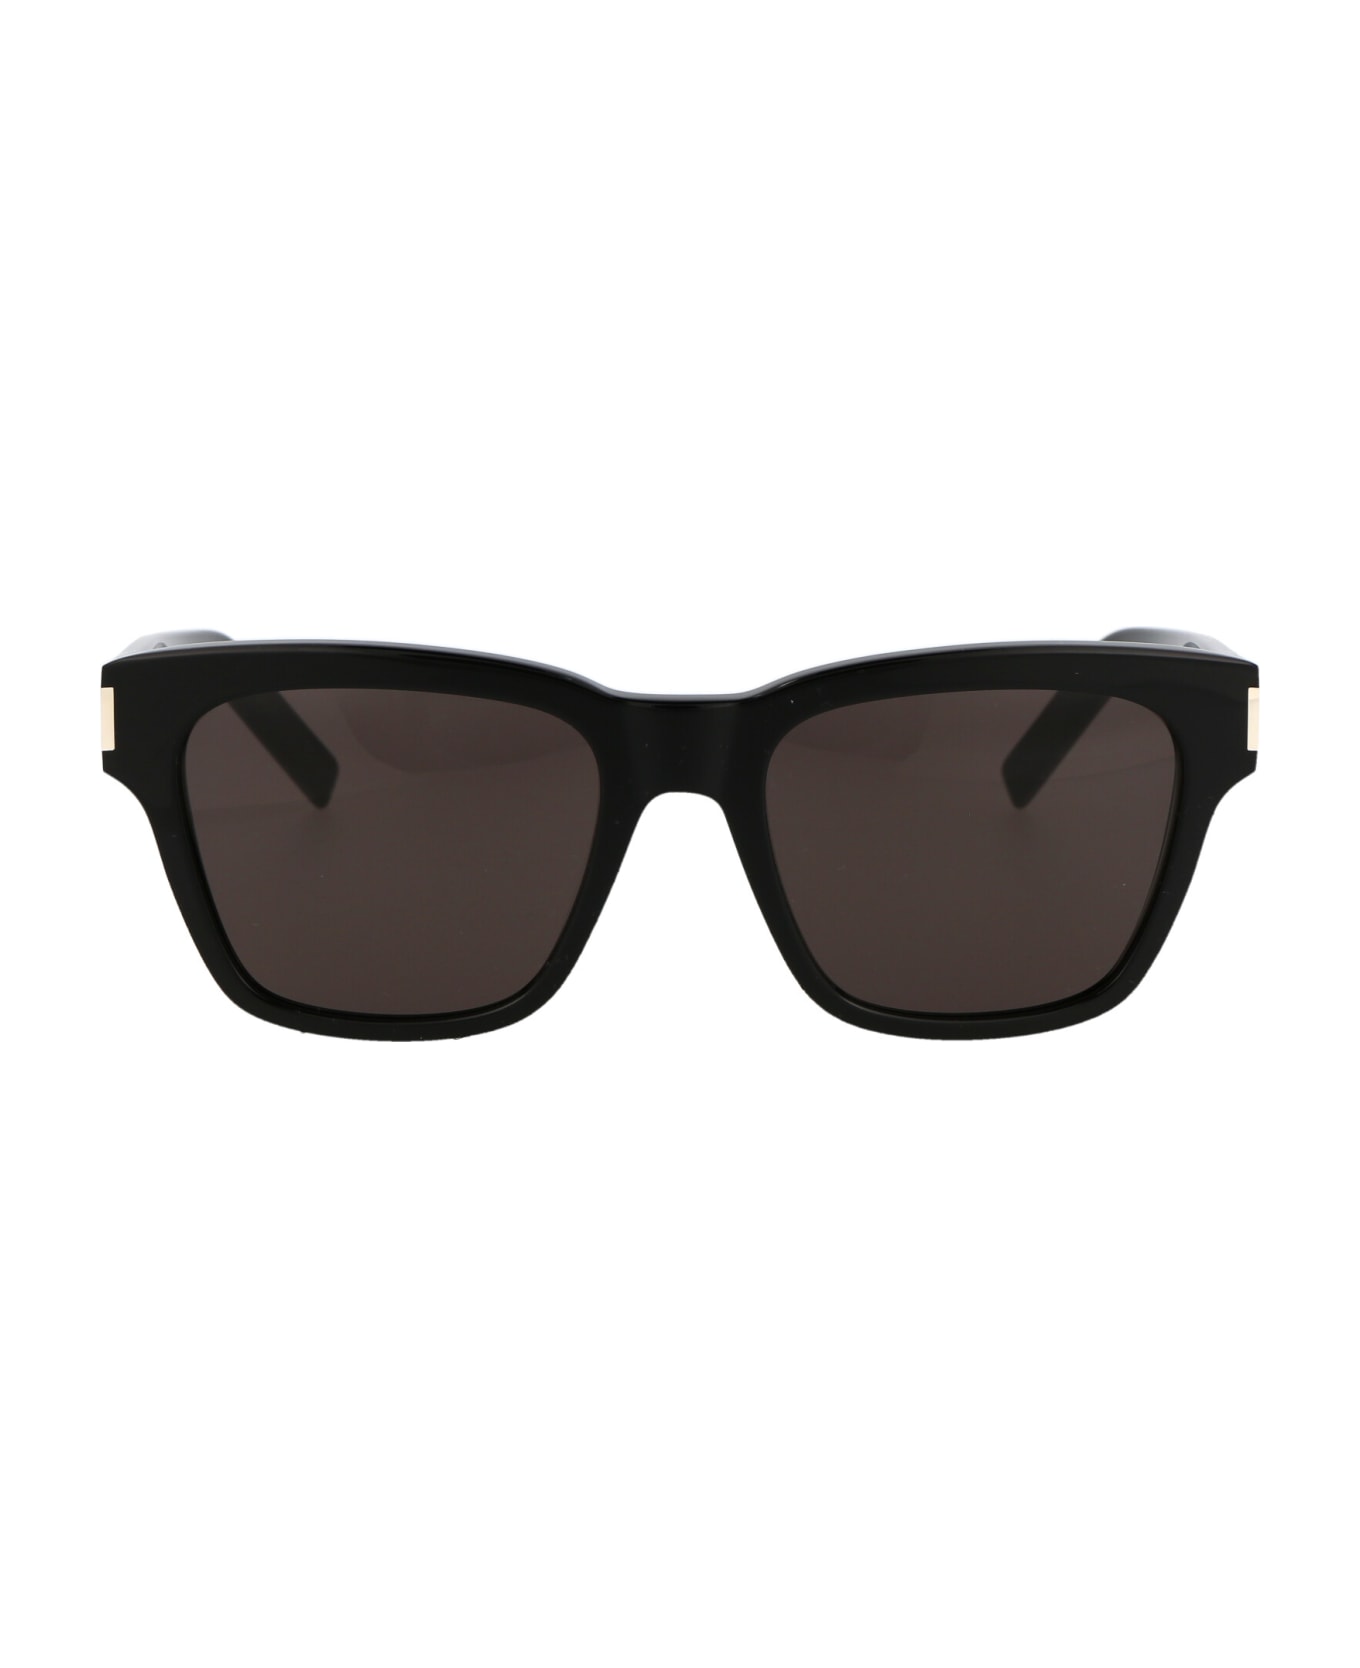 Saint Laurent Eyewear Sl 560 Sunglasses - 001 BLACK BLACK BLACK サングラス